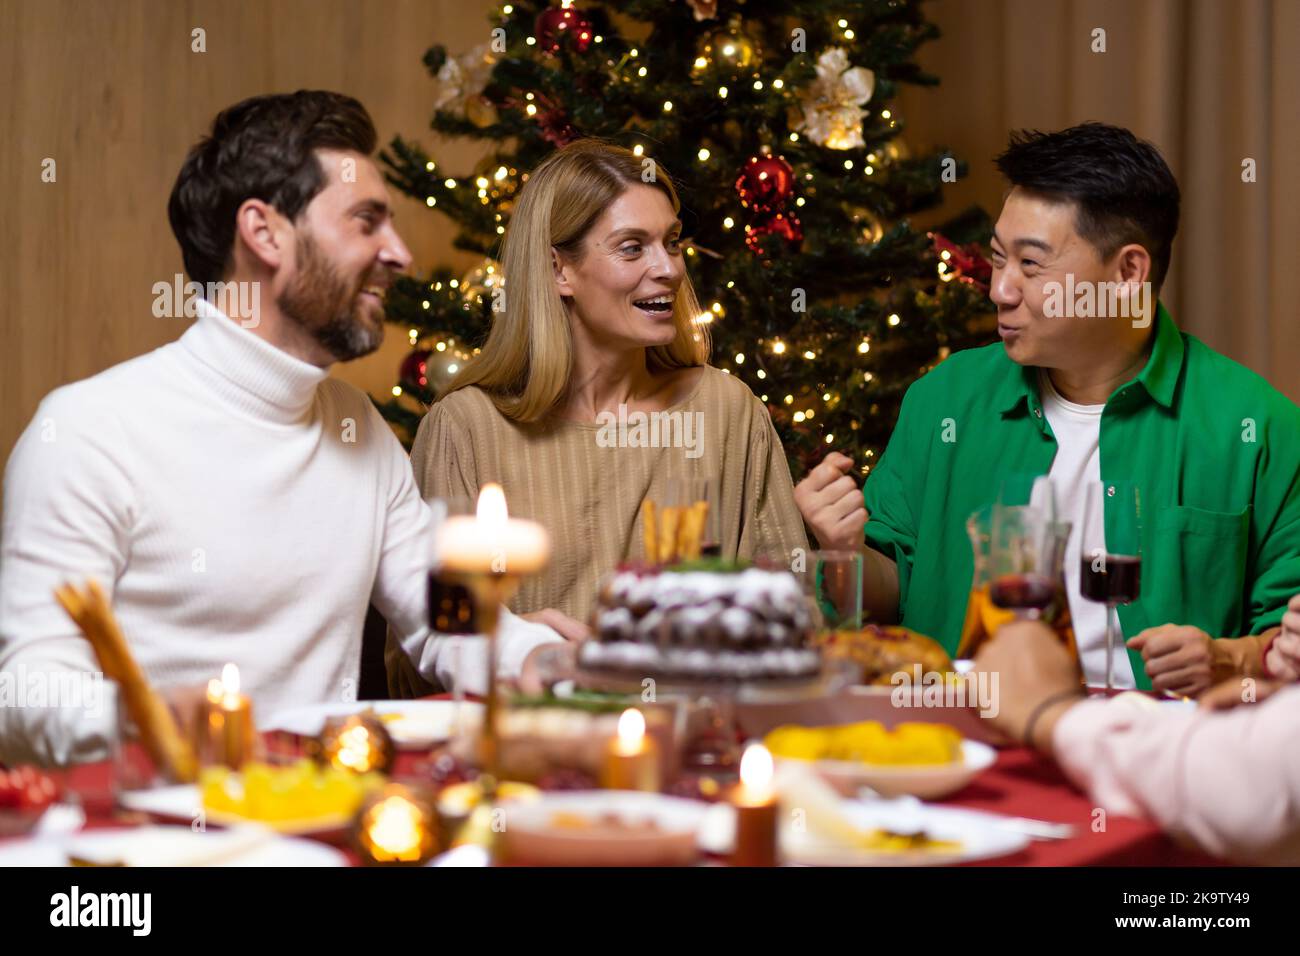 Amigos celebran la víspera de Navidad o Año Nuevo paty juntos sentados en la mesa. Fiesta en casa grupo de multi étnica cena festiva de navidad. Gente alegre feliz. Foto de stock